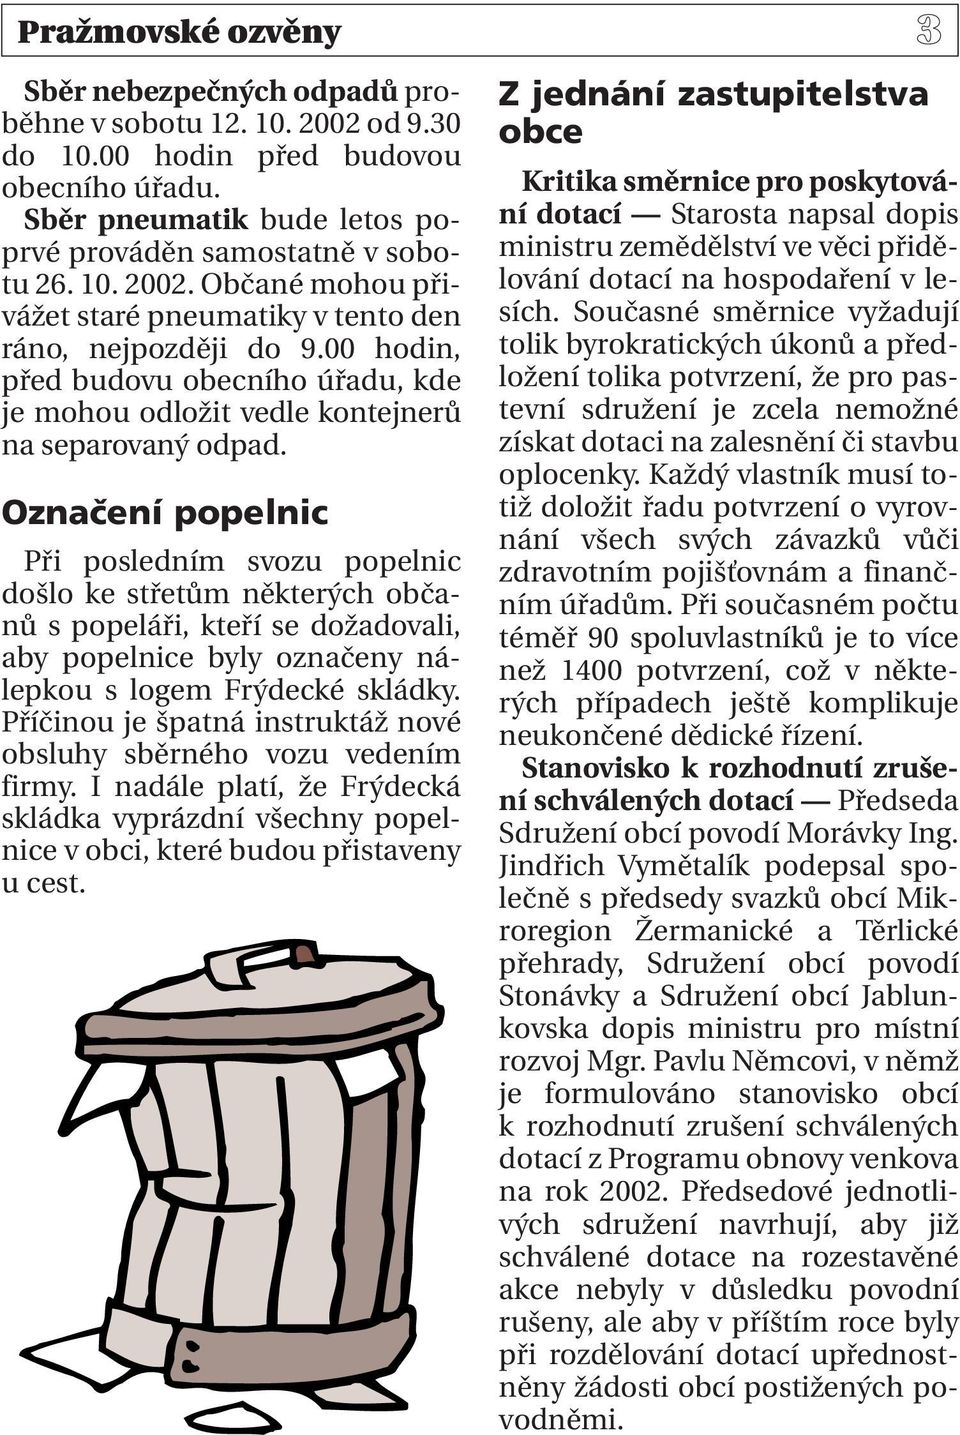 Označení popelnic Při posledním svozu popelnic došlo ke střetům některých občanů s popeláři, kteří se dožadovali, aby popelnice byly označeny nálepkou s logem Frýdecké skládky.